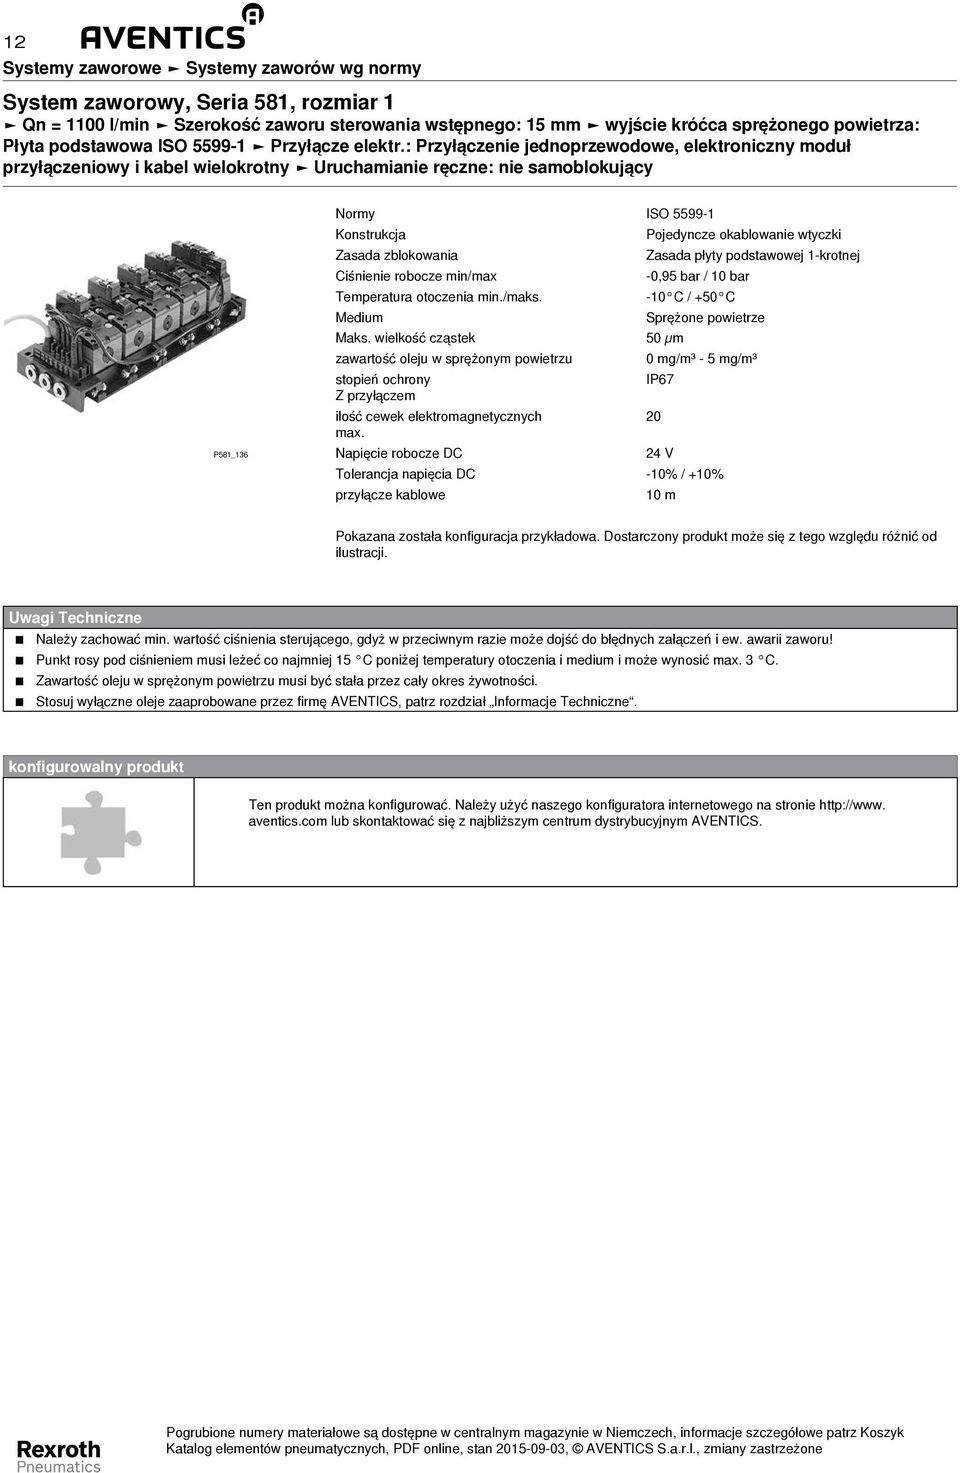 Zasada zblokowania Zasada płyty podstawowej 1-krotnej Ciśnienie robocze min/max -0,95 bar / 10 bar Temperatura otoczenia min./maks. -10 C / +50 C Medium Sprężone powietrze Maks.